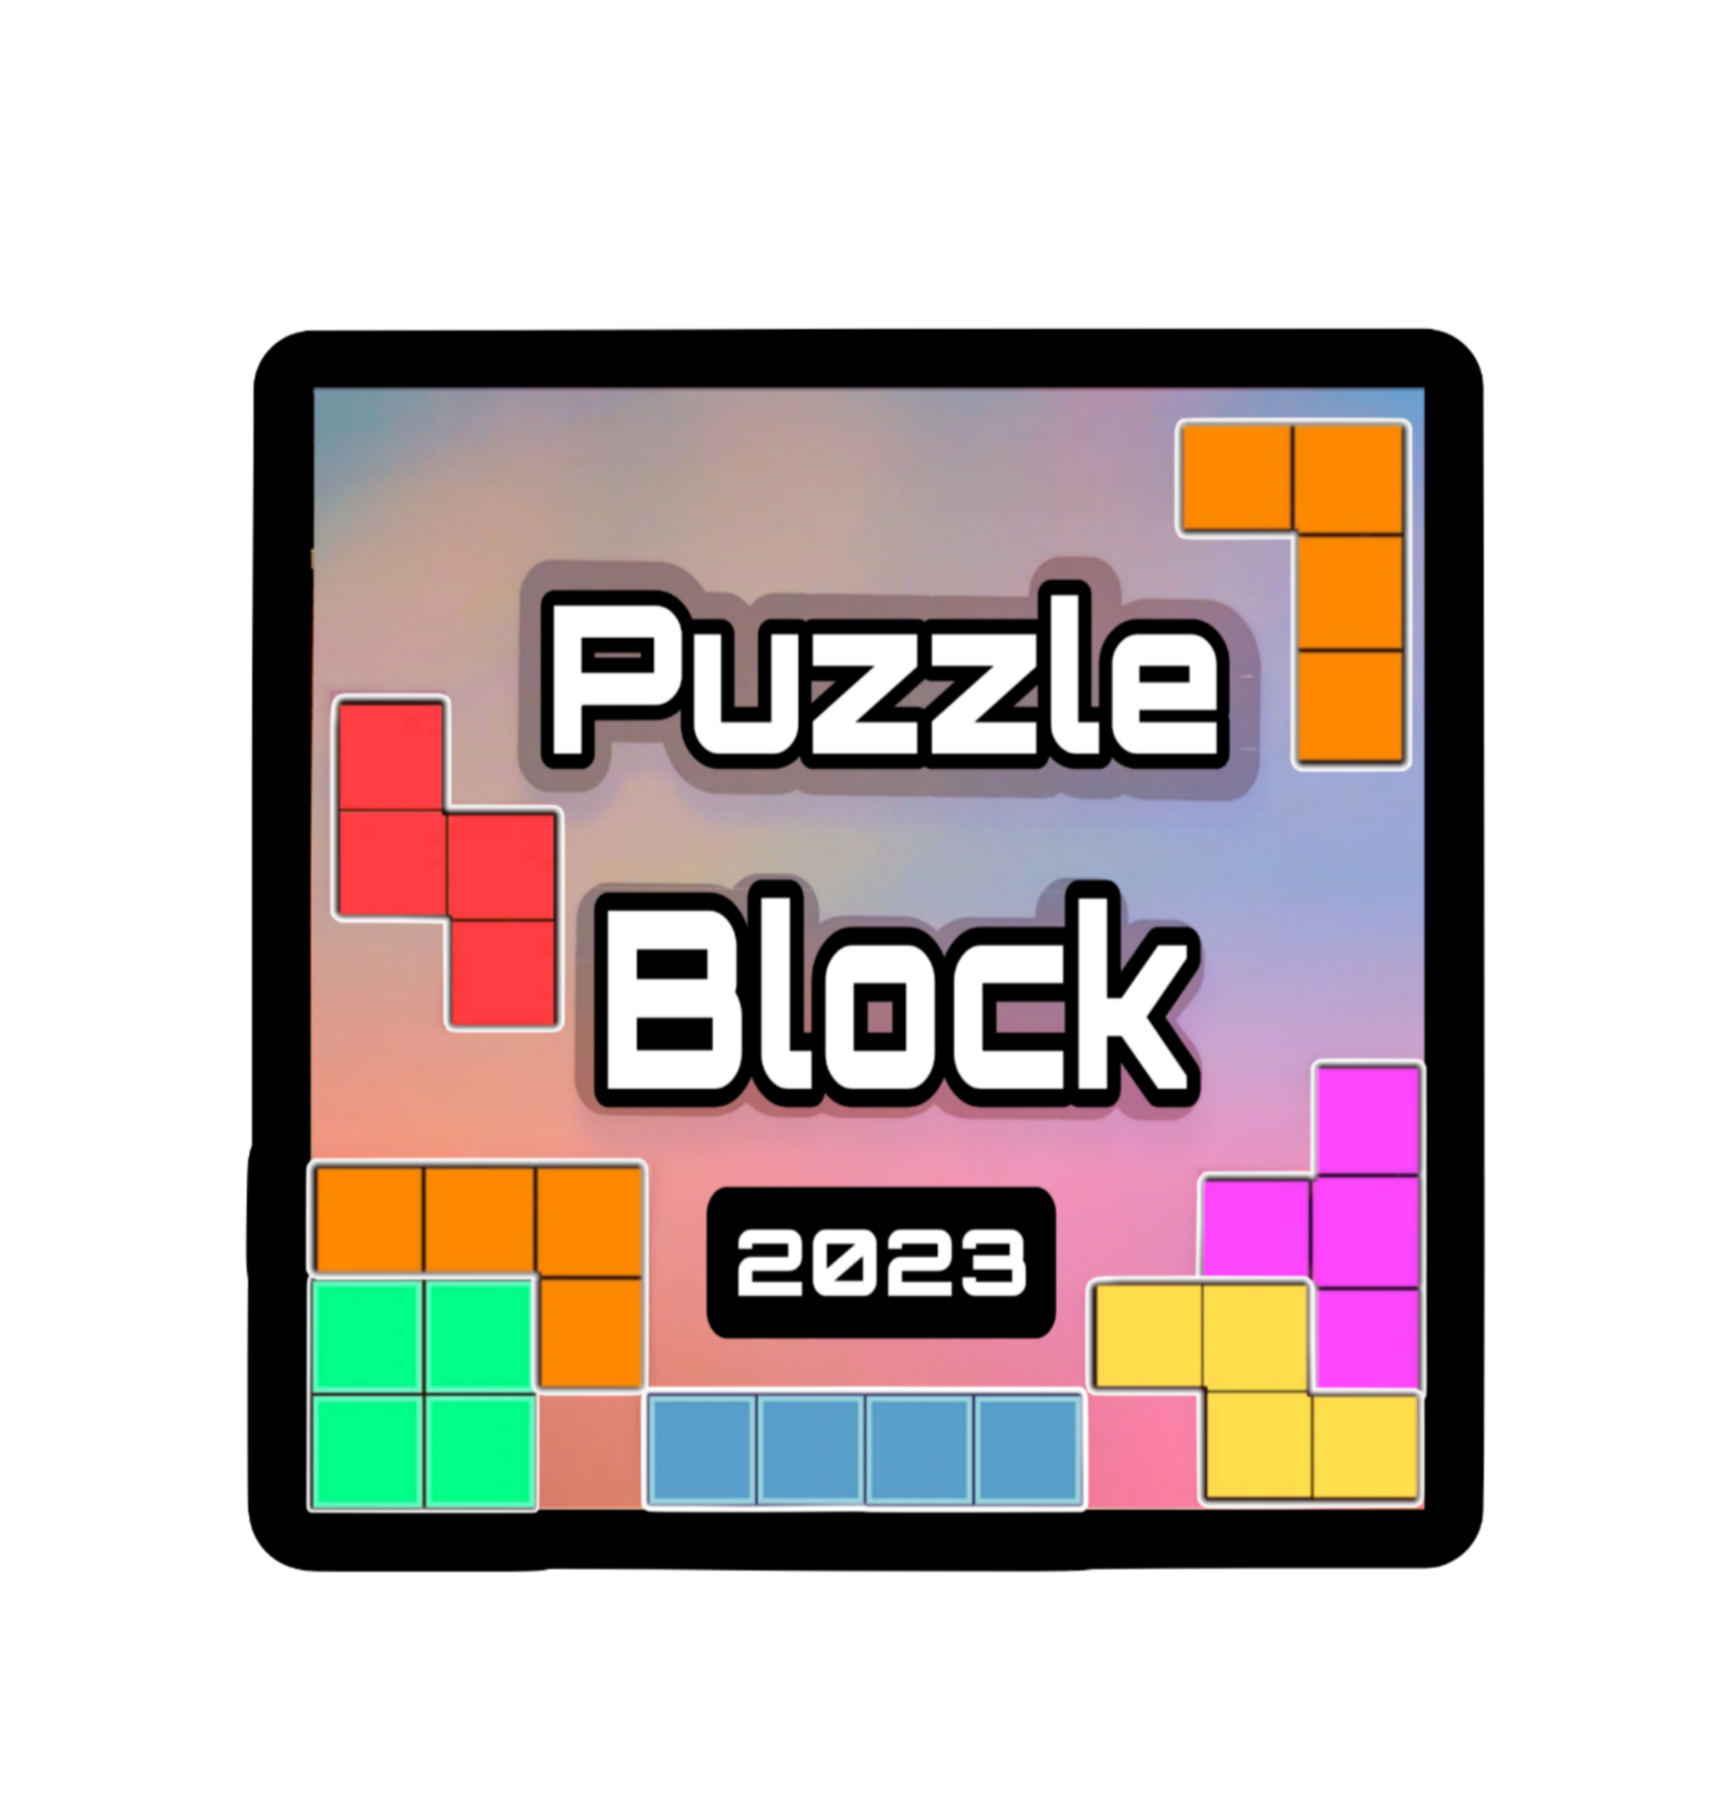 Puzzle Block 2023